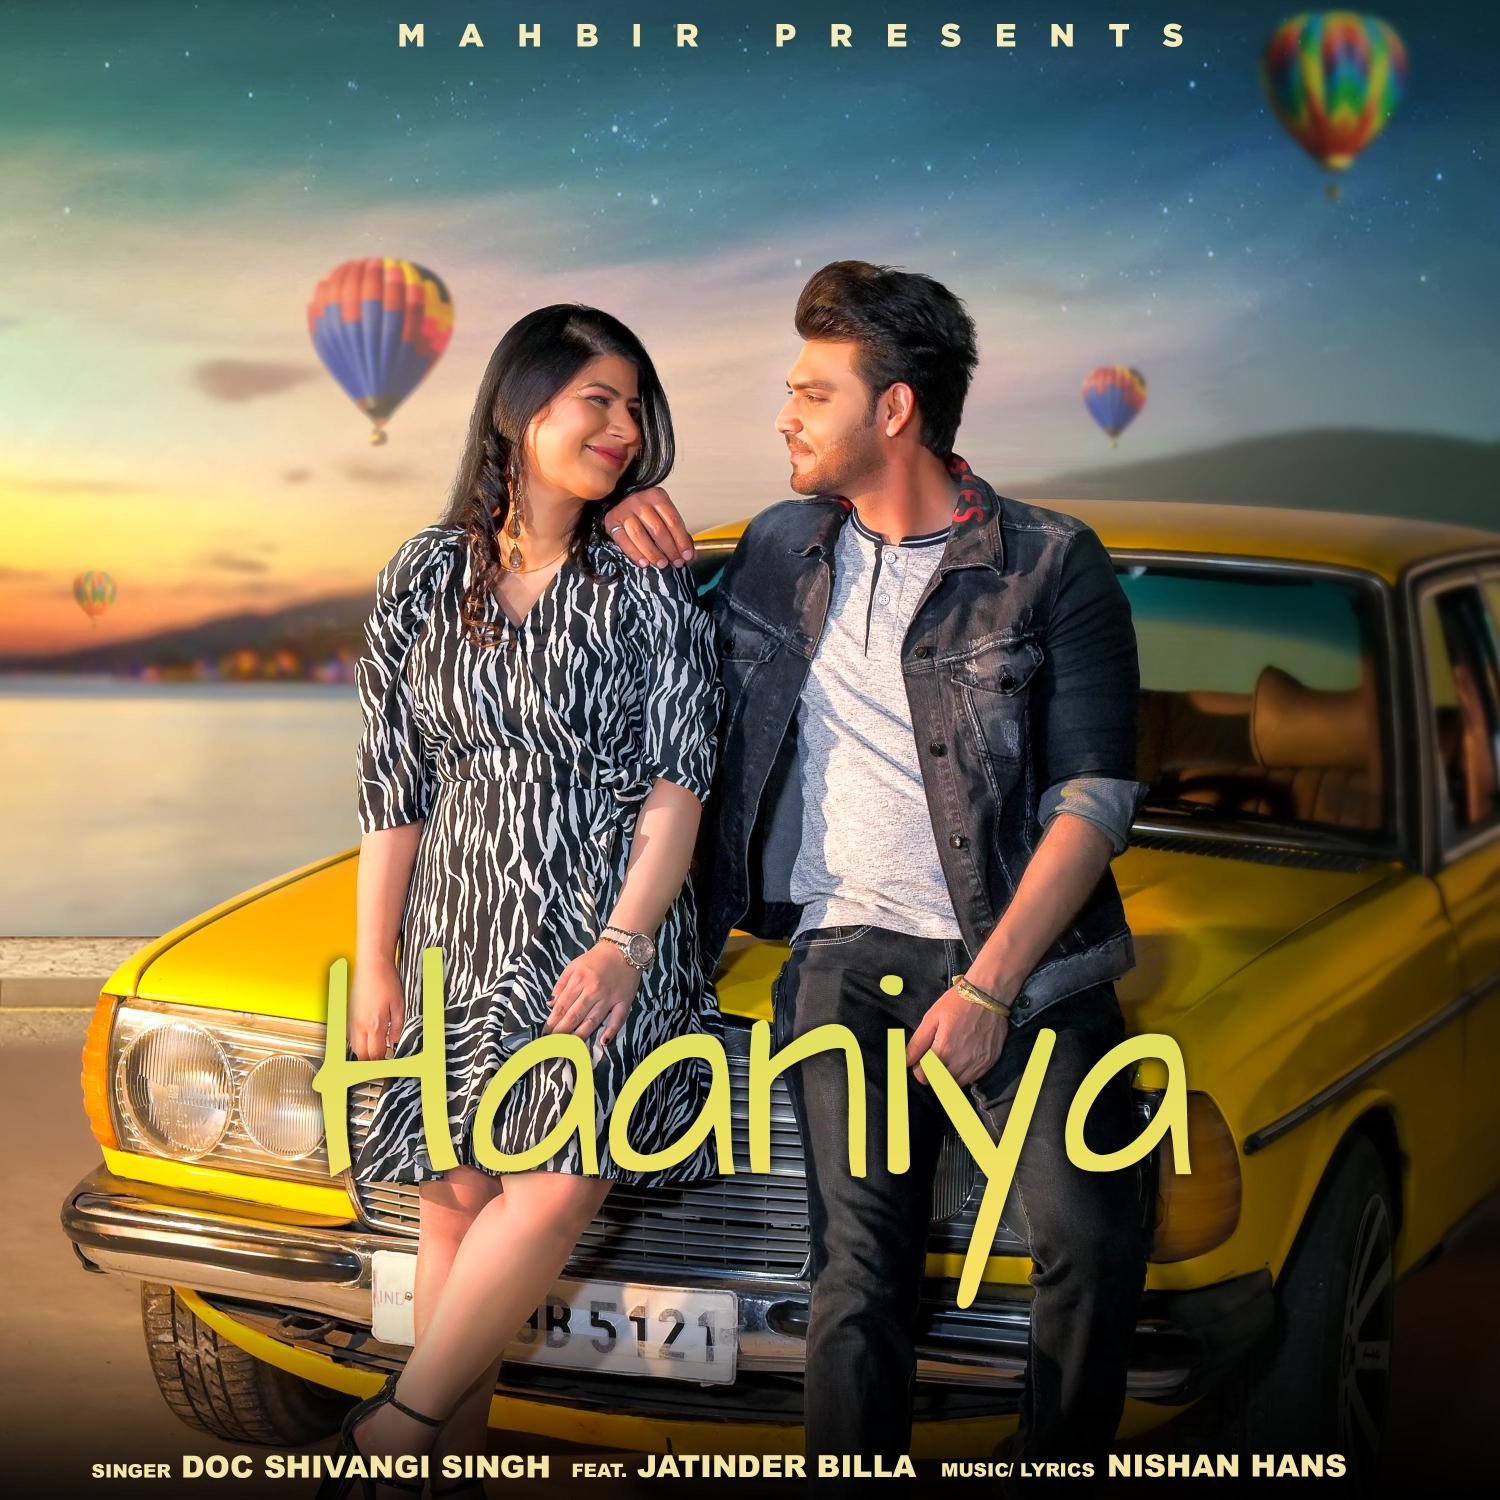 Постер альбома Haaniya